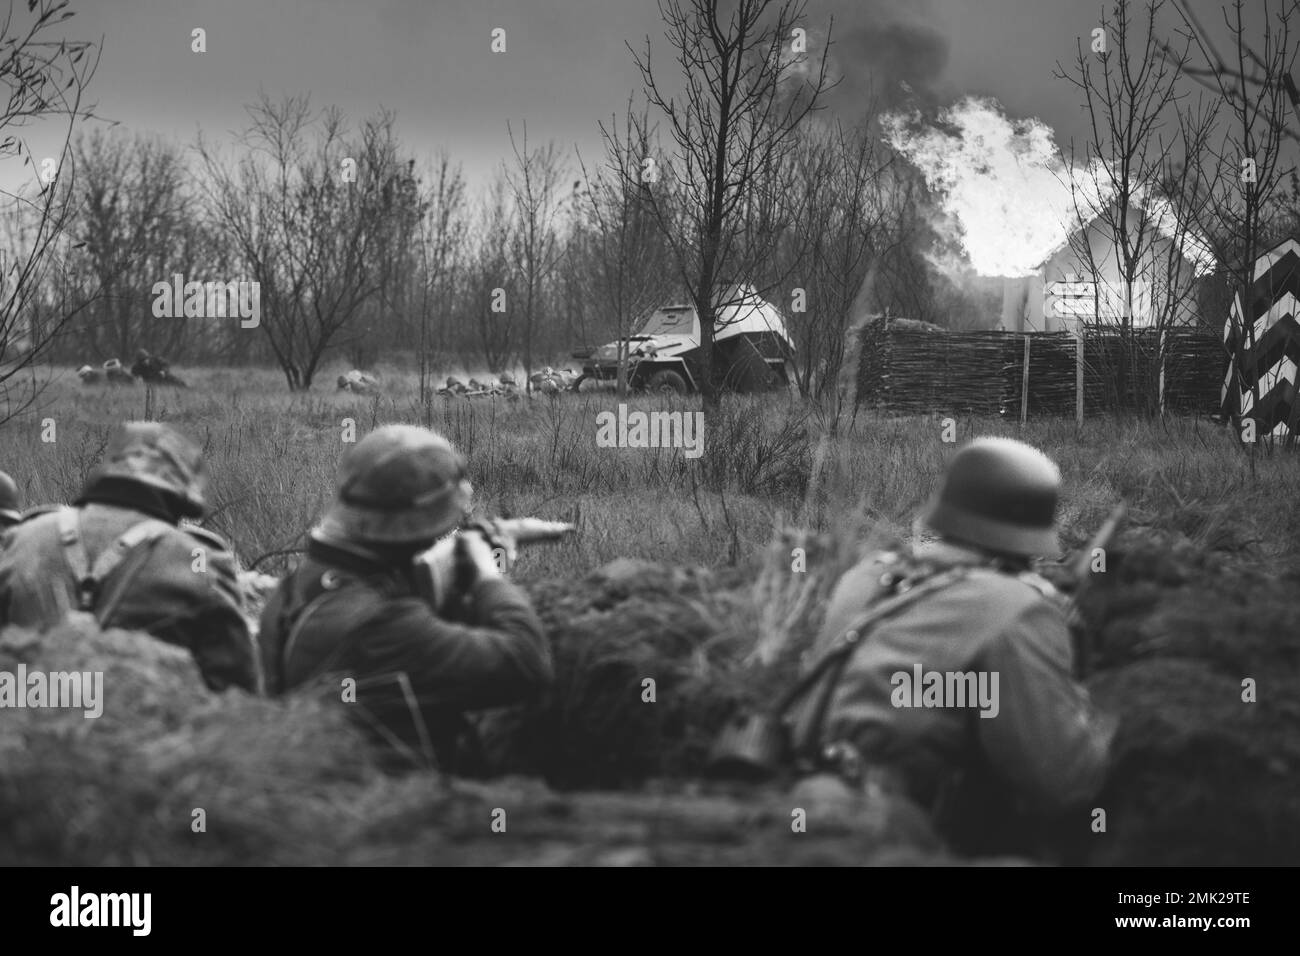 Nachbemaler bewaffneter Gewehre und gekleidet als deutsche Wehrmacht-Infanterie-Soldaten aus dem Zweiten Weltkrieg, die in Trench defensiv kämpfen. Kampf Gegen Kampffahrzeug Stockfoto